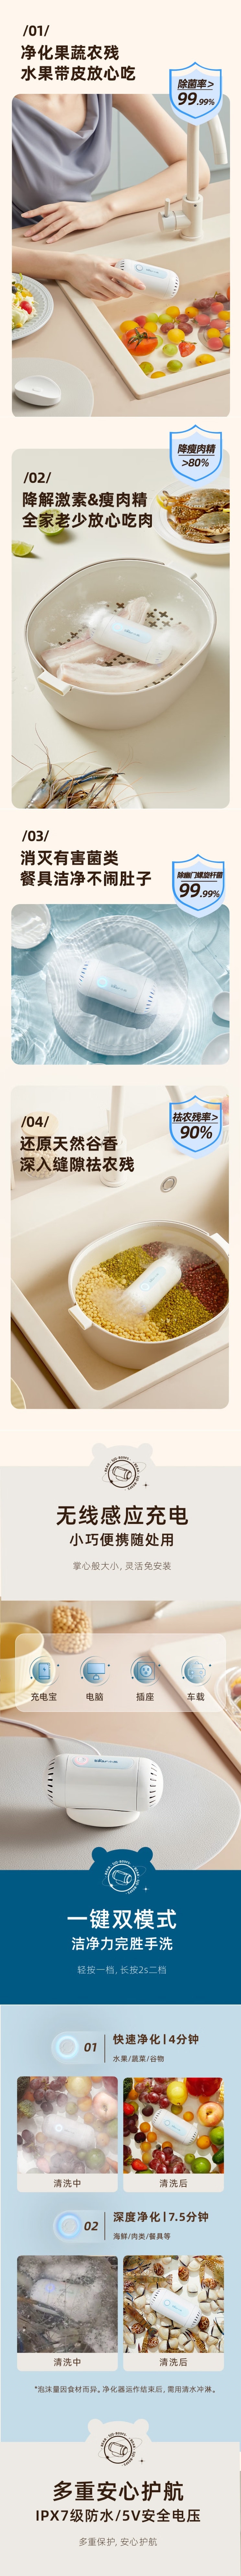 【中國直效郵件】Bear小熊 蔬果清洗機洗菜機 蔬菜食物淨化 雙頭淨化殺菌滅菌機